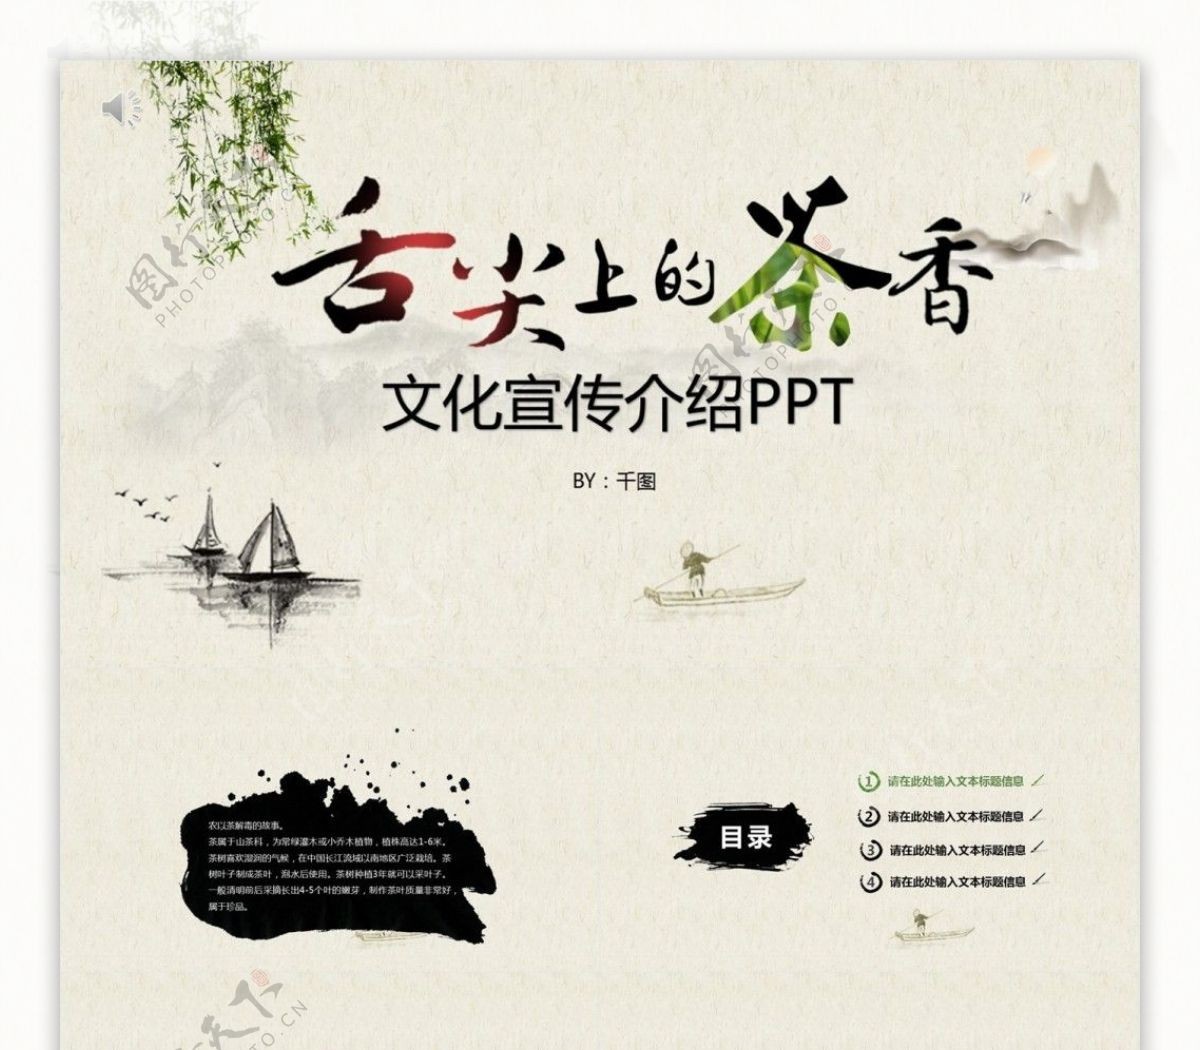 中国风水墨元素传统文化宣传介绍PPT模板